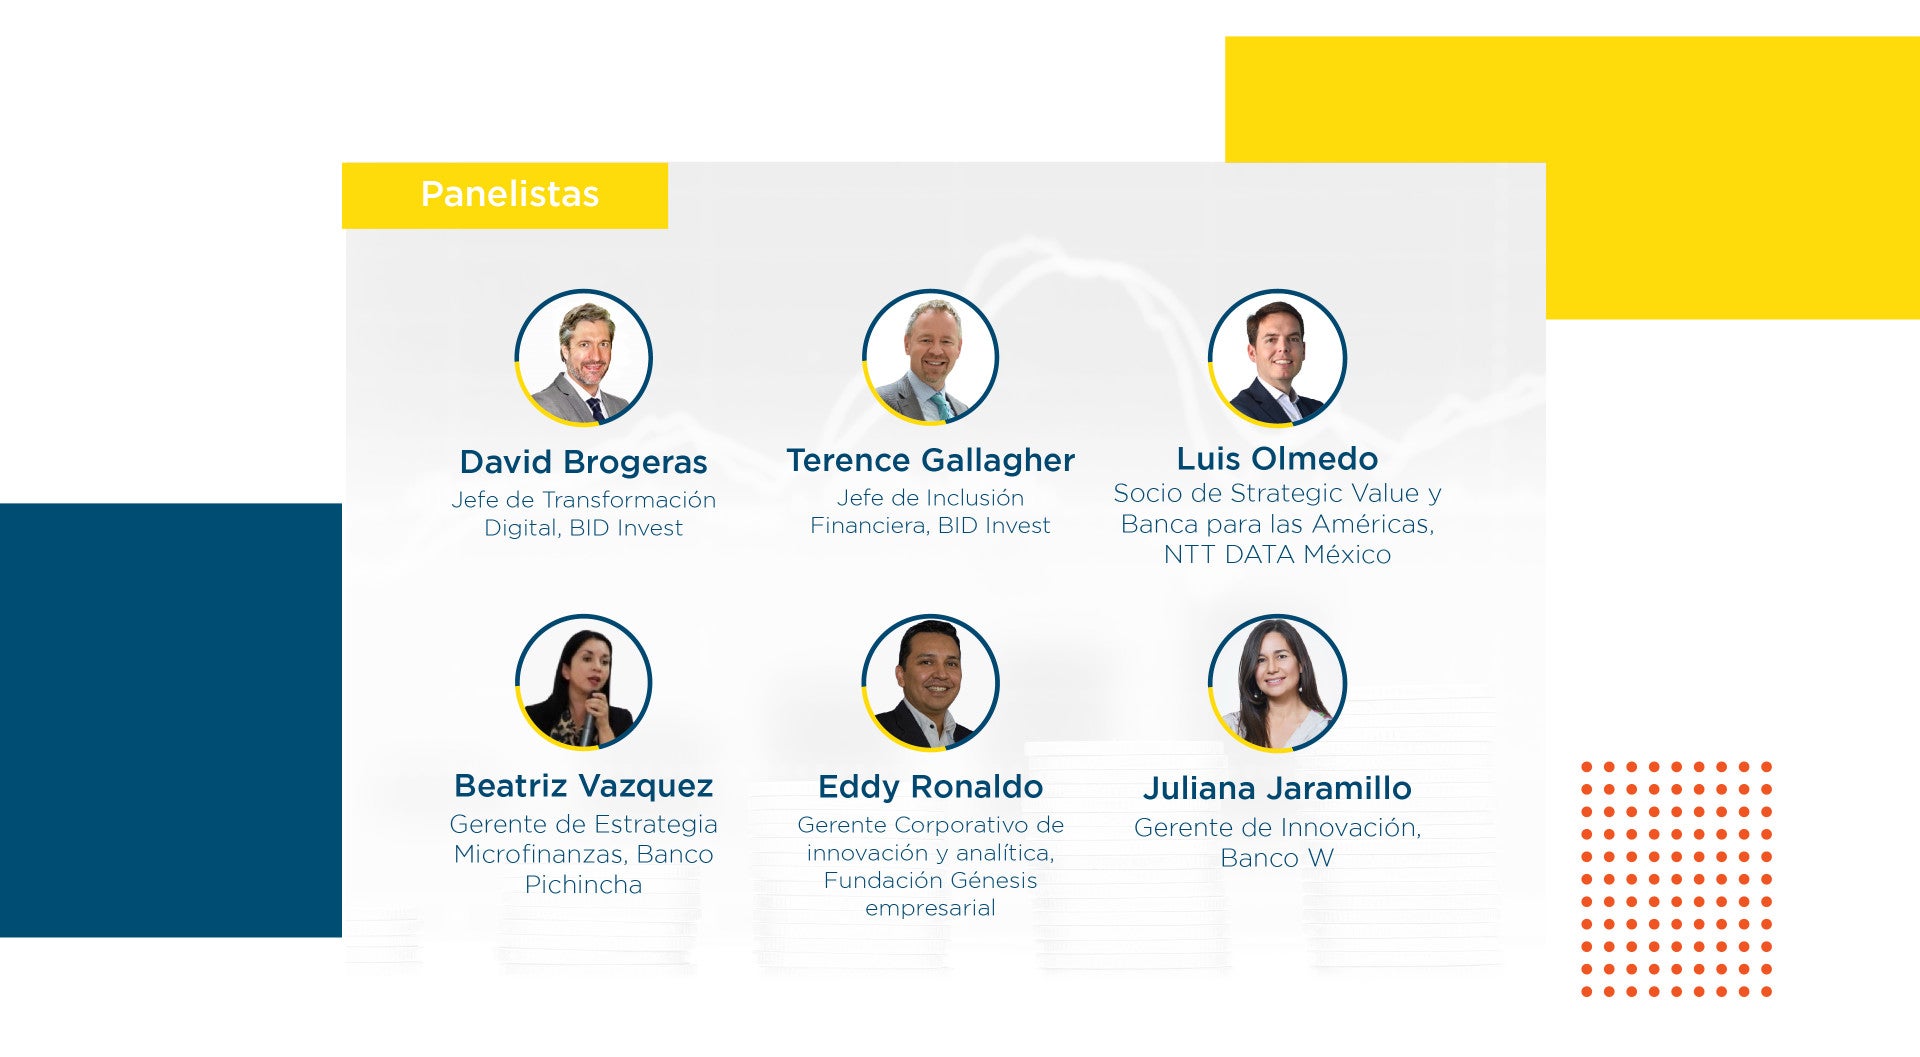 Panelistas webinar inclusión financiera BID Invest